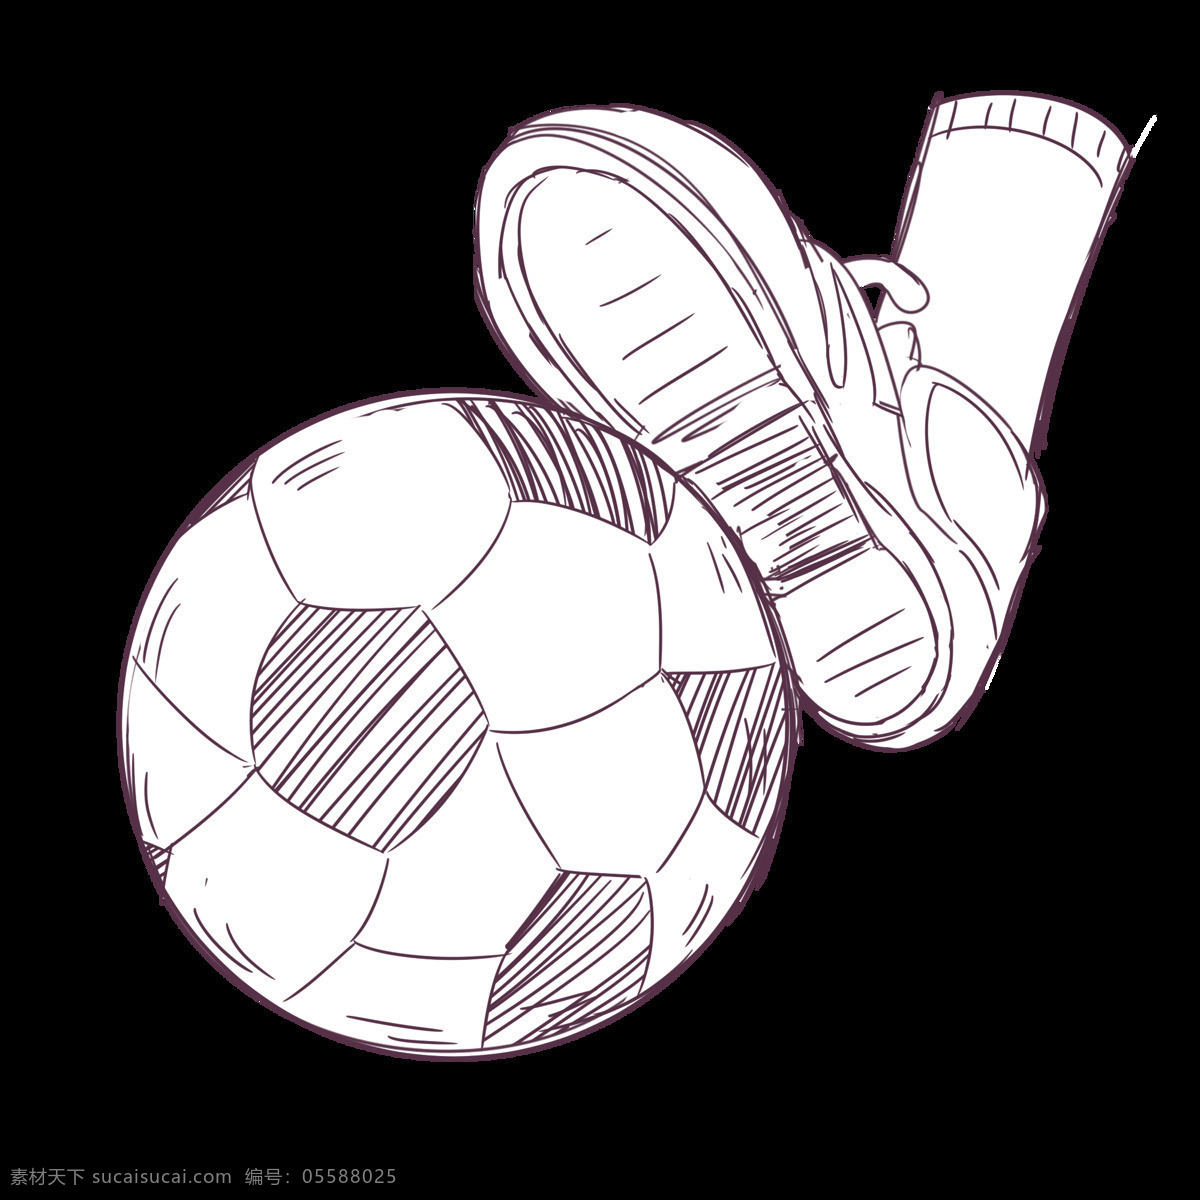 线稿 足球小素材 足球 小素材 简笔画 手账 生活用品 线稿素材 包装设计